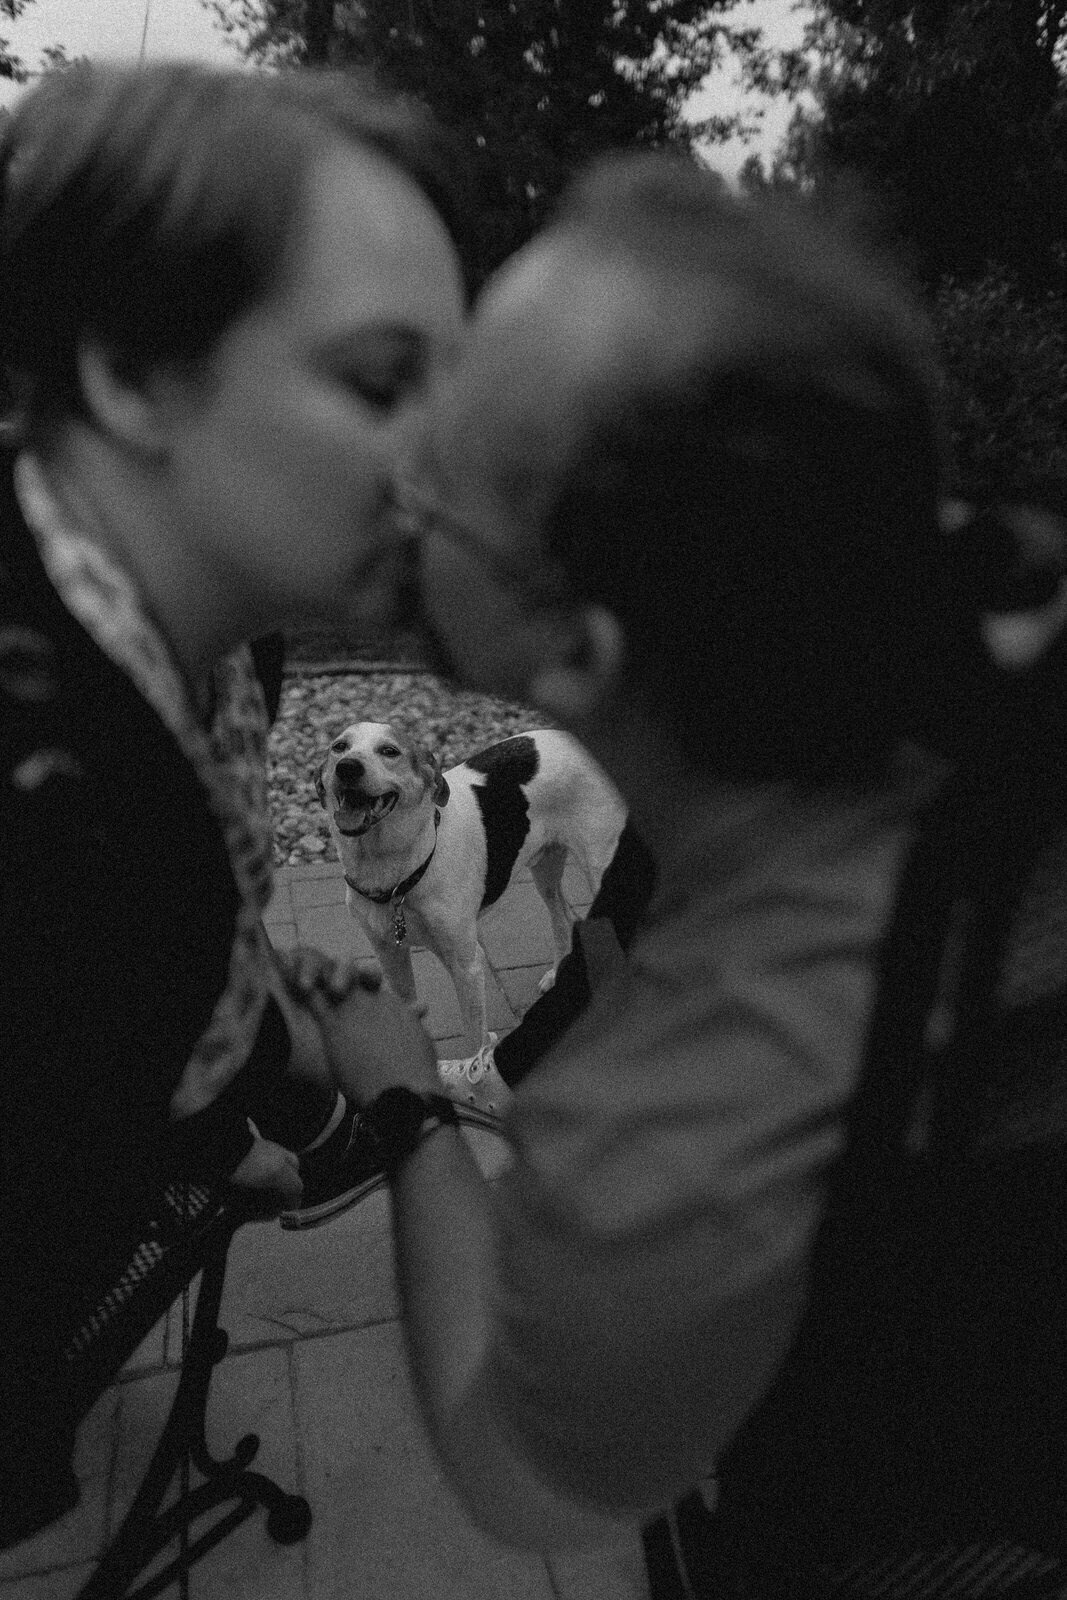 dog-family-photos-illinois-storytelling-emotional-21